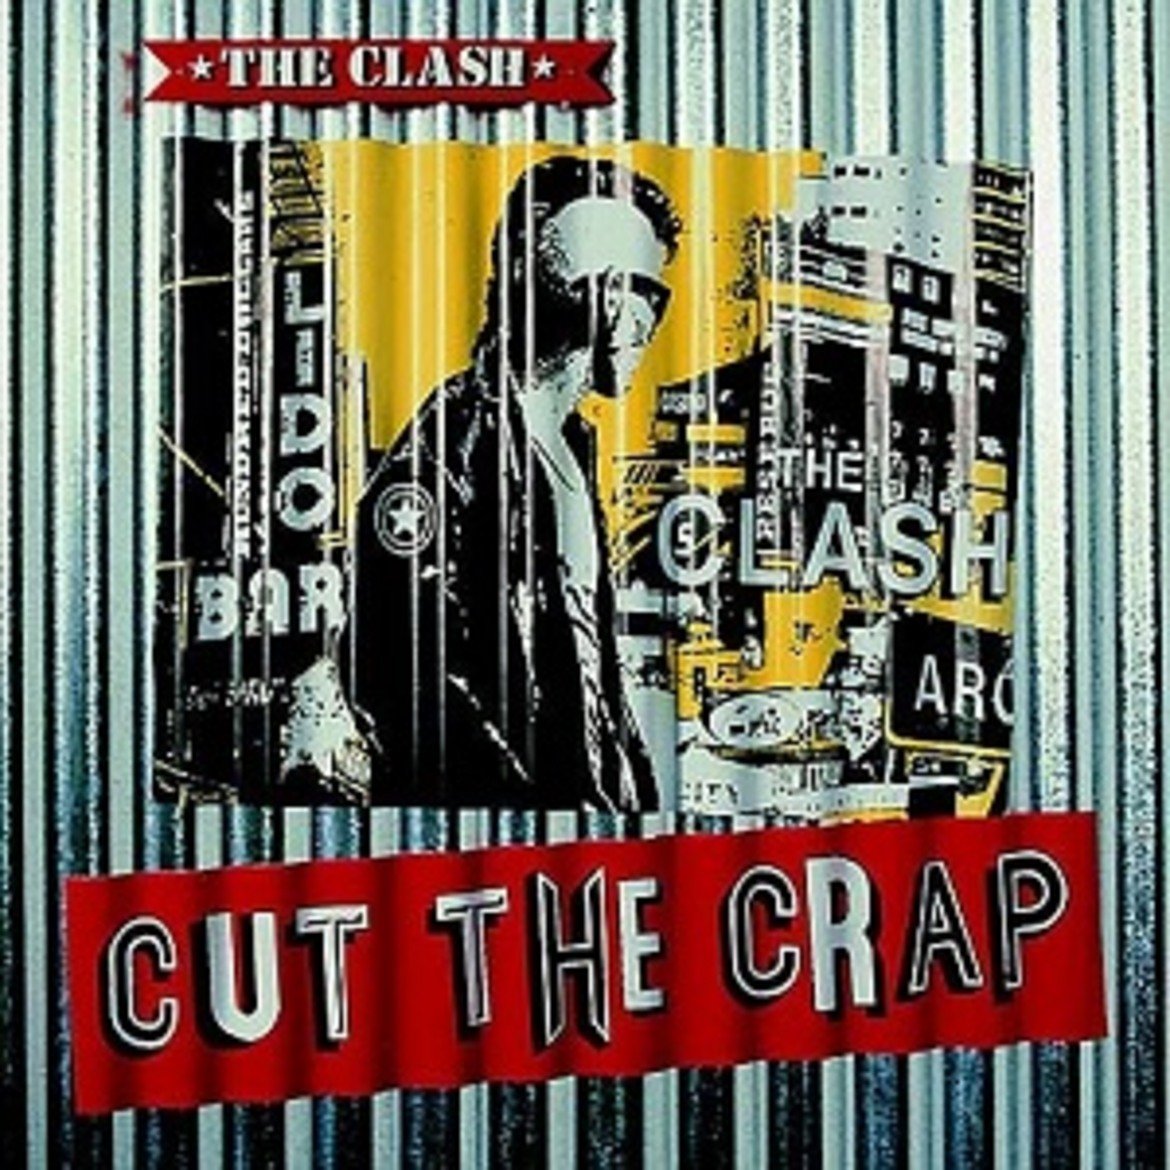  The Clash - Cut the Crap 

Това е шестият и последен албум на бандата, който не просто слага край на кариерата й, но и почти унищожава завещанието й за бъдещите поколения. Фронтменът Джо Стръмър се събира да работи отново с първия мениджър на групата – Бърни Роудс, но решението предизвиква само и единствено спорове и неразбирателства как да звучи албумът. 

"Cut the Crap" се оказва пълна бъркотия от звуци и текстове, а групата дотолкова го намразва, че отказва да тръгне на турне, за да го представи на публиката. А заради негативните отзиви от почитатели и критици Стръмър се мести да живее в Испания.